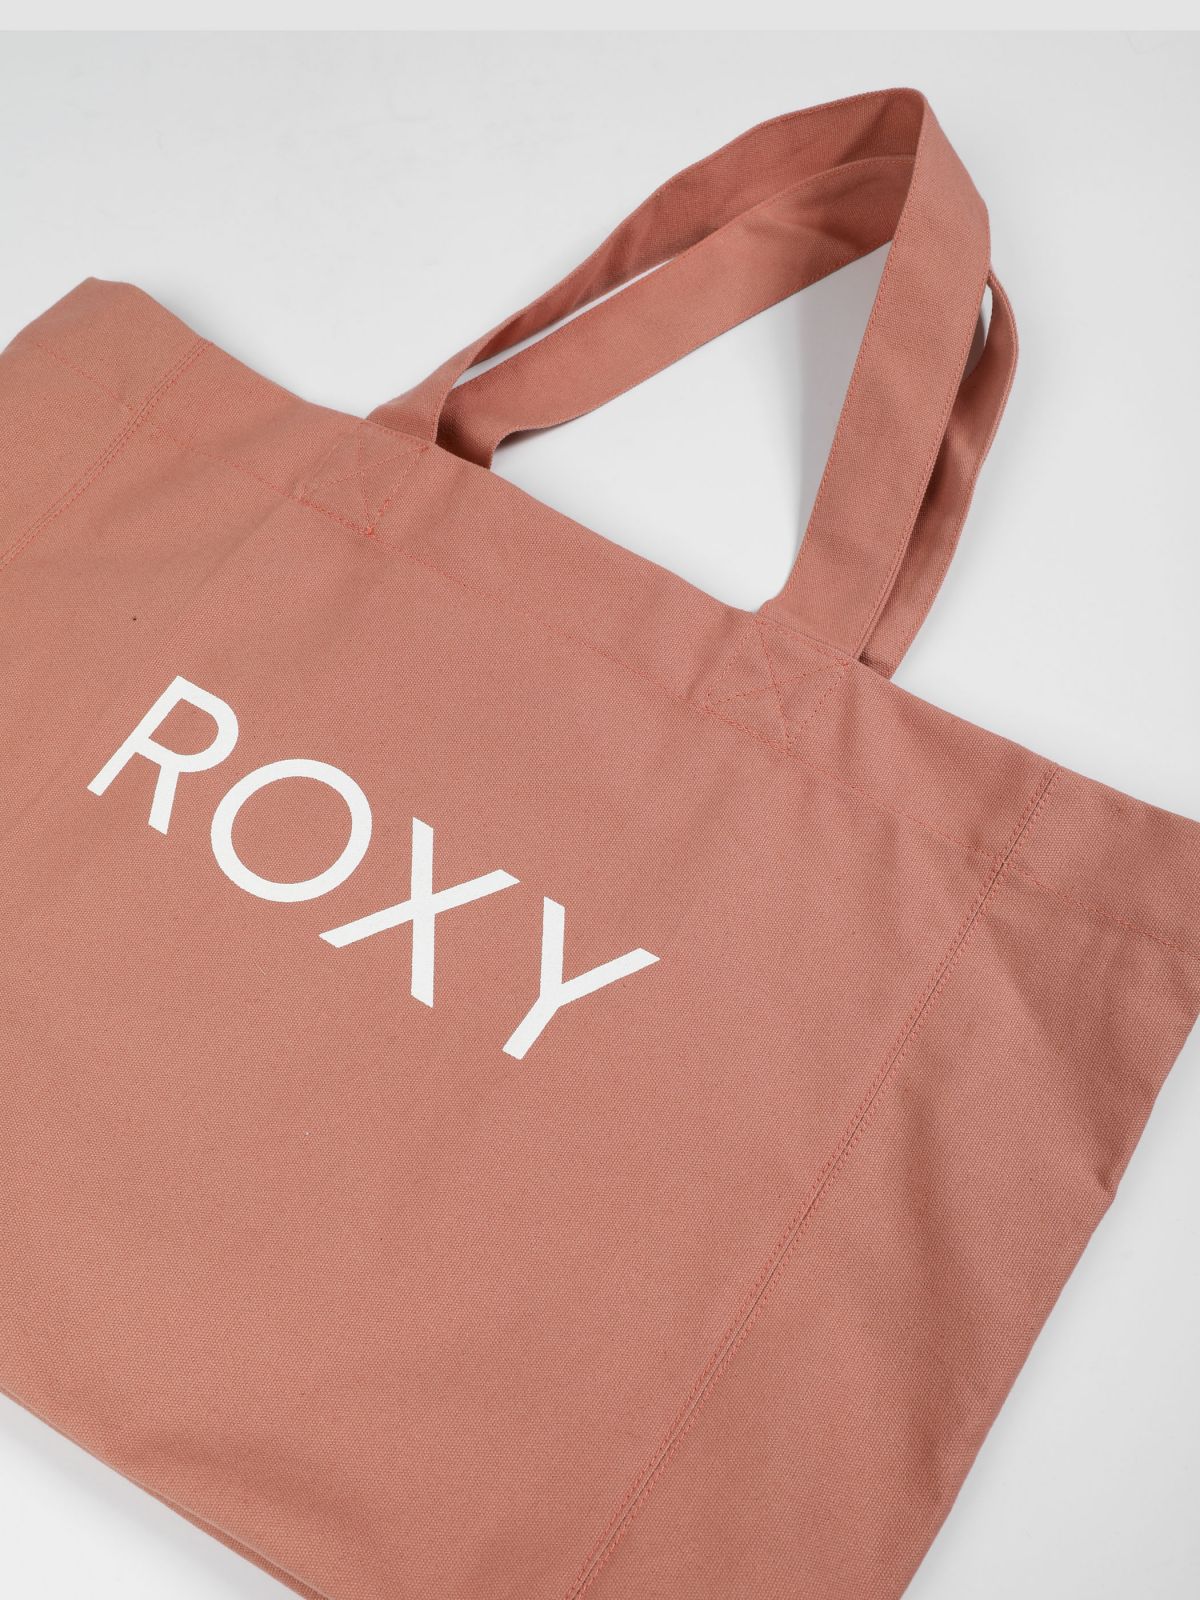  תיק יד גדול עם הדפס לוגו / נשים של ROXY